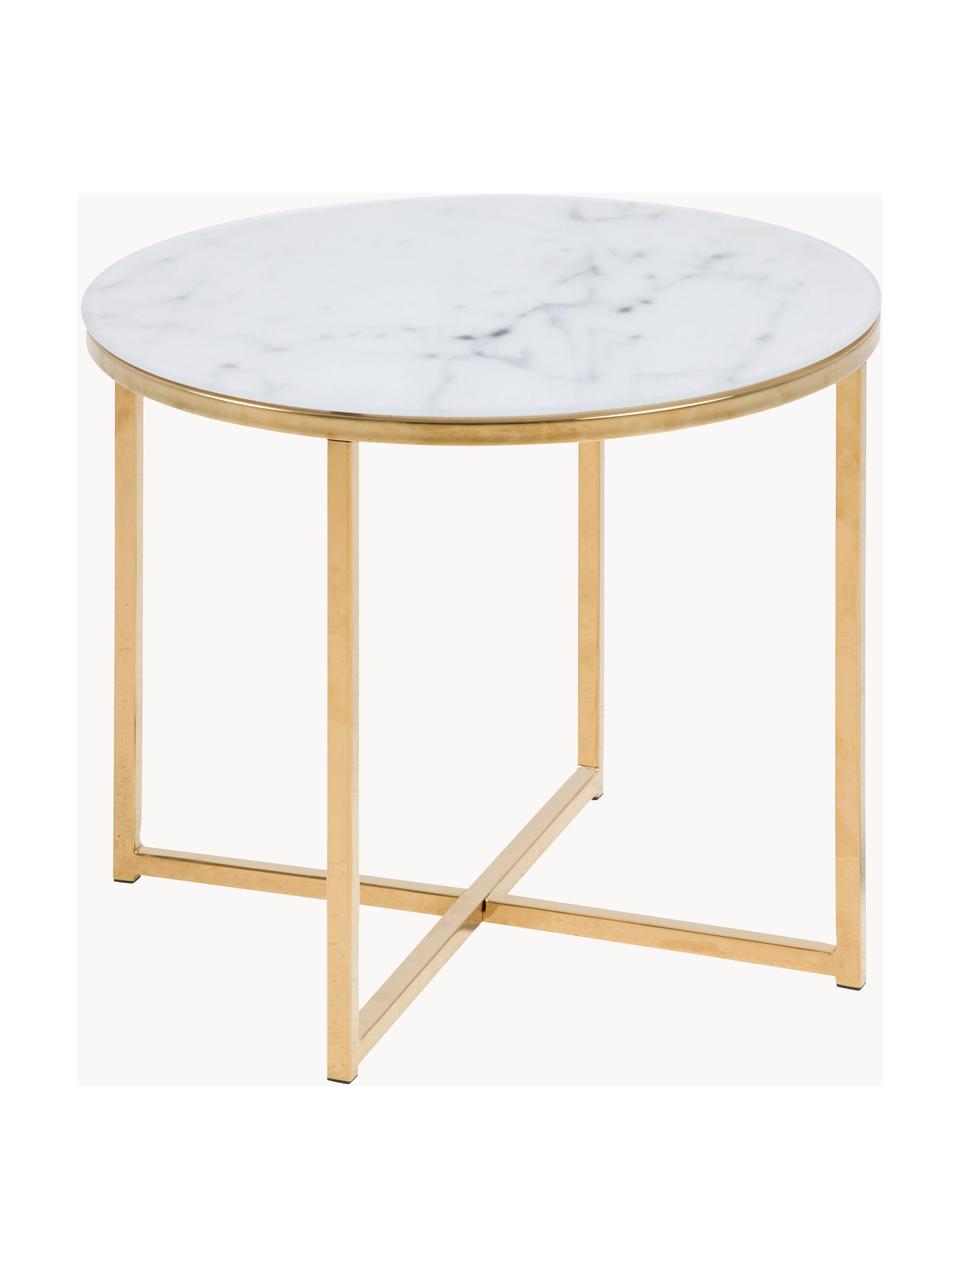 Odkládací stolek s mramorovanou skleněnou deskou Aruba, Bílá v mramorovém vzhledu, zlatá, Ø 50 cm, V 42 cm